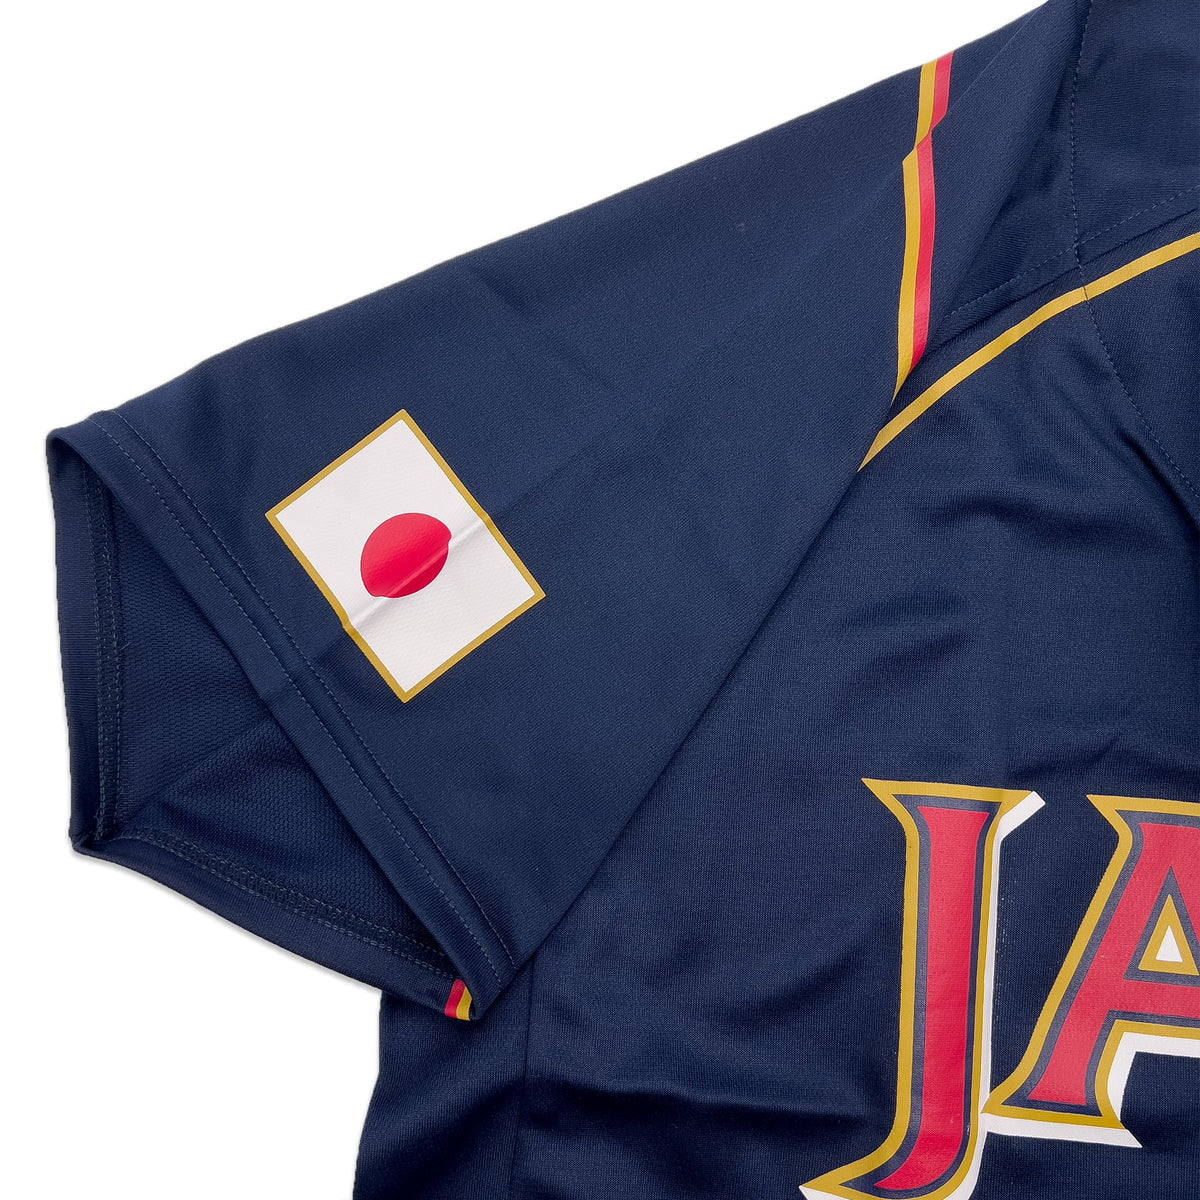 Majestic Japan WBC 2013 World Baseball Classic Shinnosuke Abe Jersey #46 Blue - Sugoi JDM